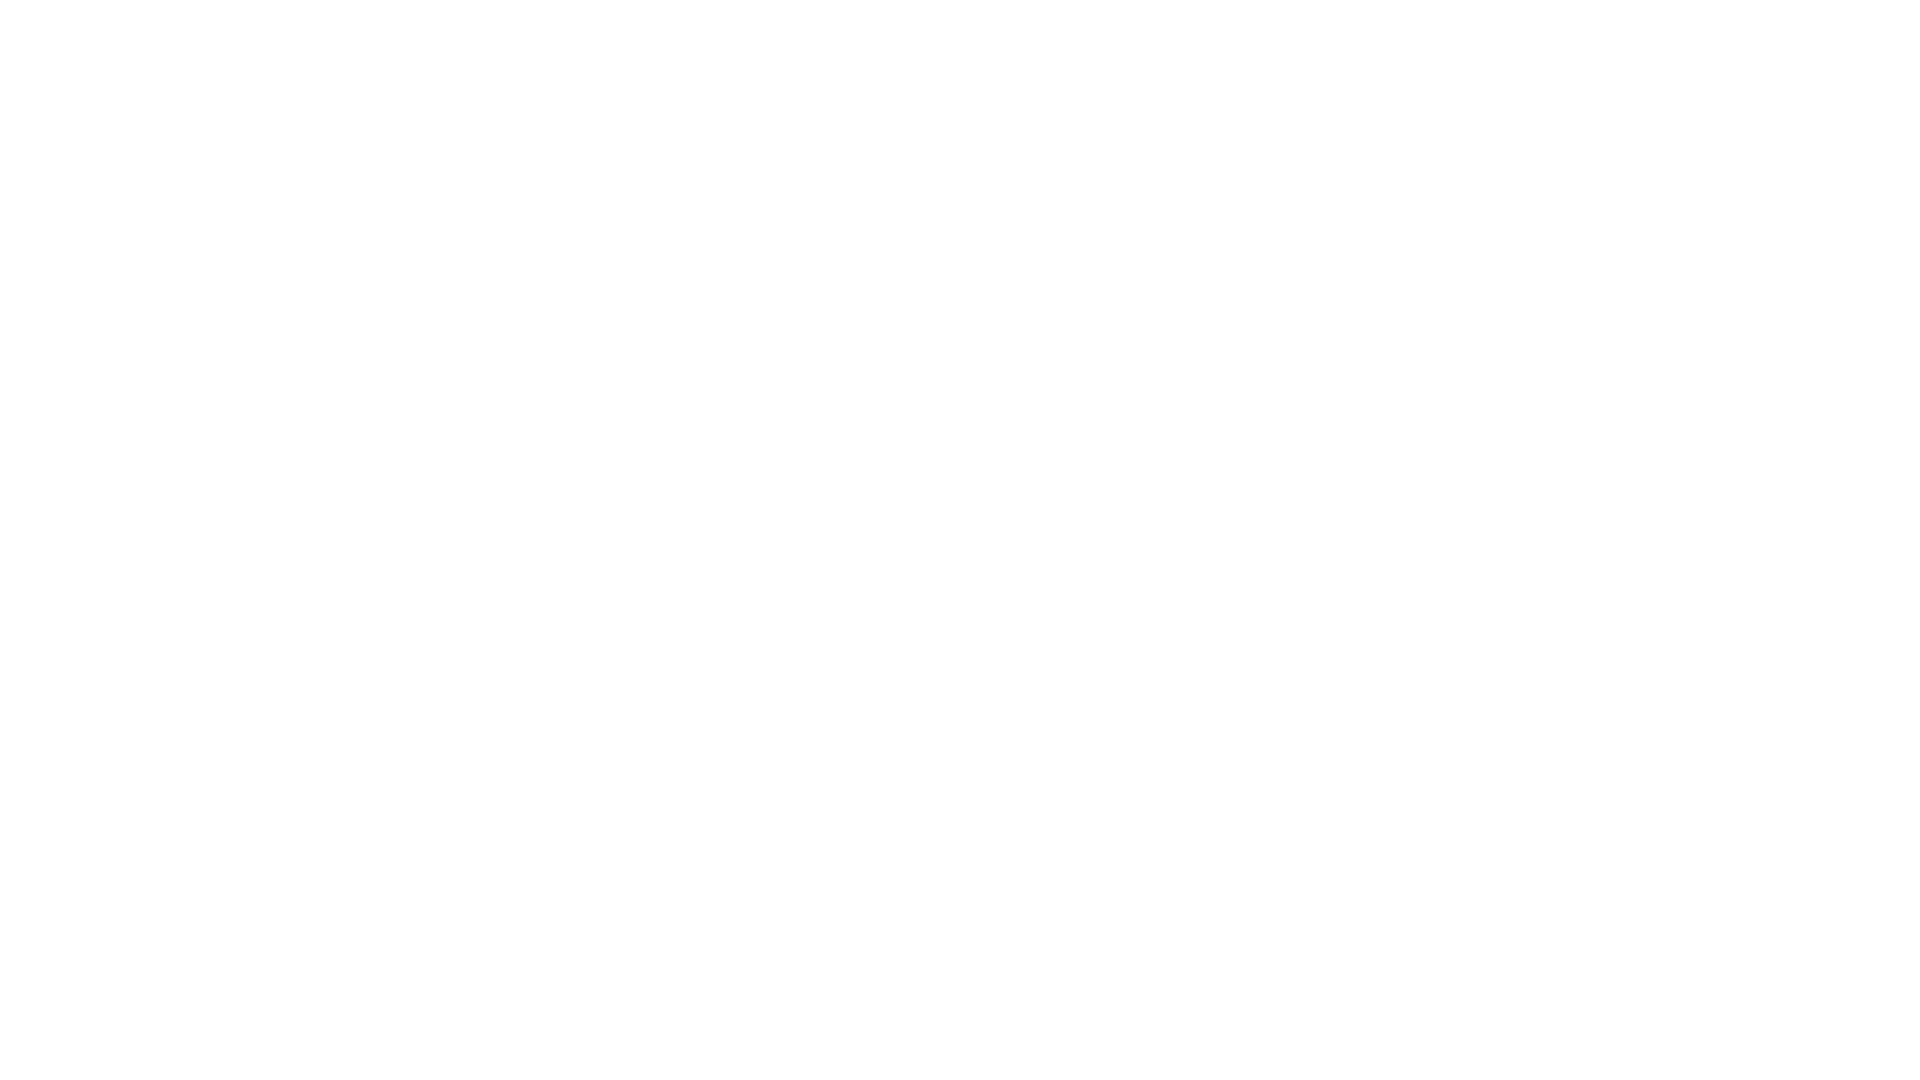 tecnet